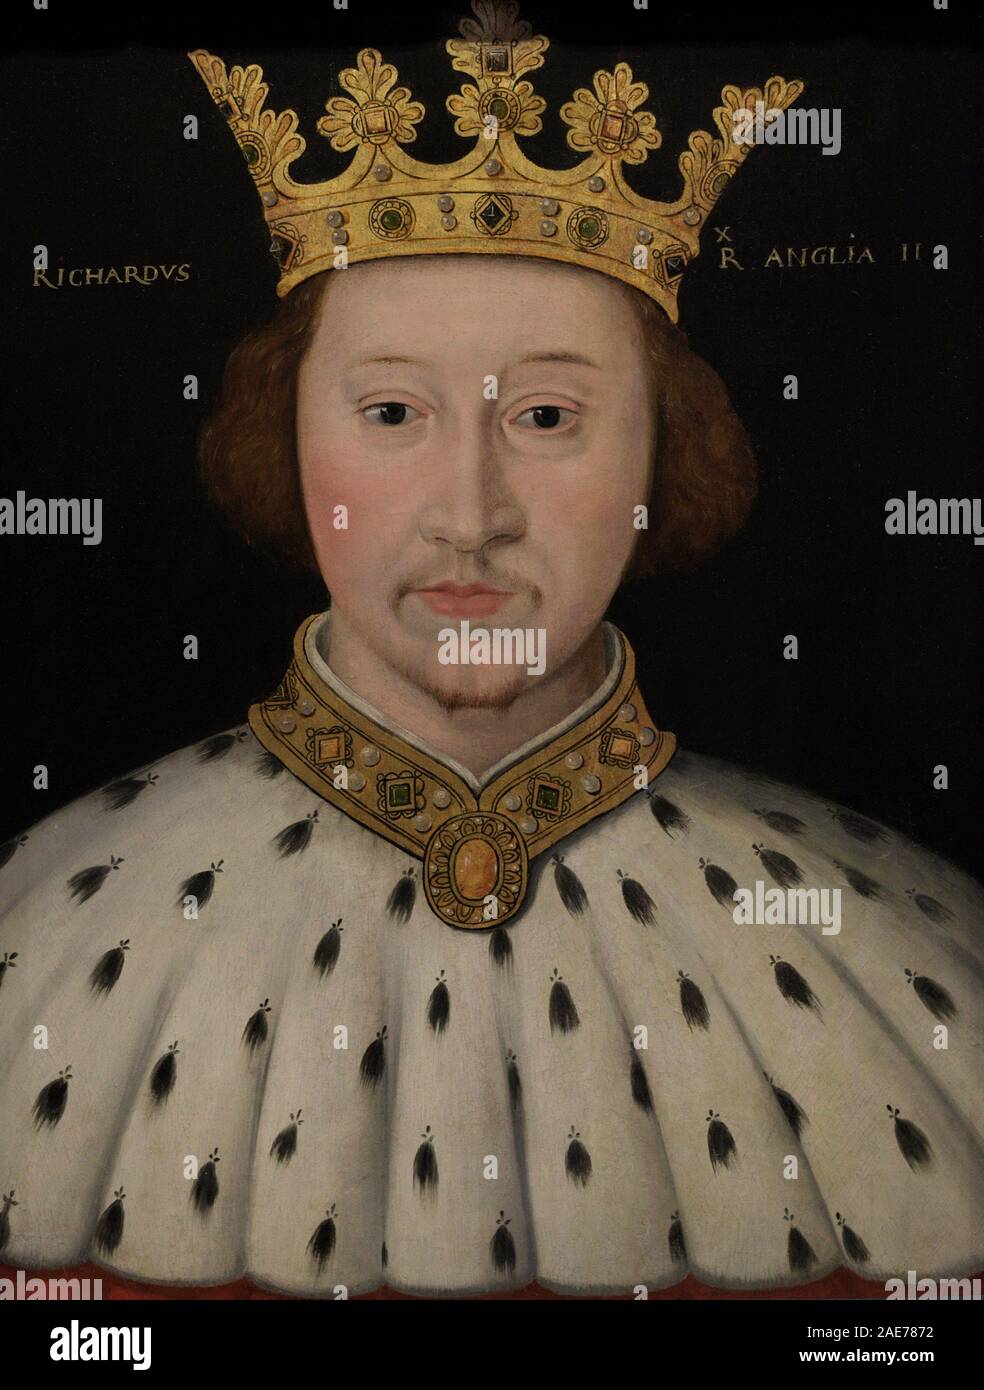 Ricardo II de Inglaterra (1367-1400). También llamado Ricardo de Burdeos. Rey de Inglaterra (1377-1400). Retrato. Autor desconocido. Oleo sobre tabla, 1597-1618. National Portrait Gallery. Londres, Inglaterra. Stock Photo